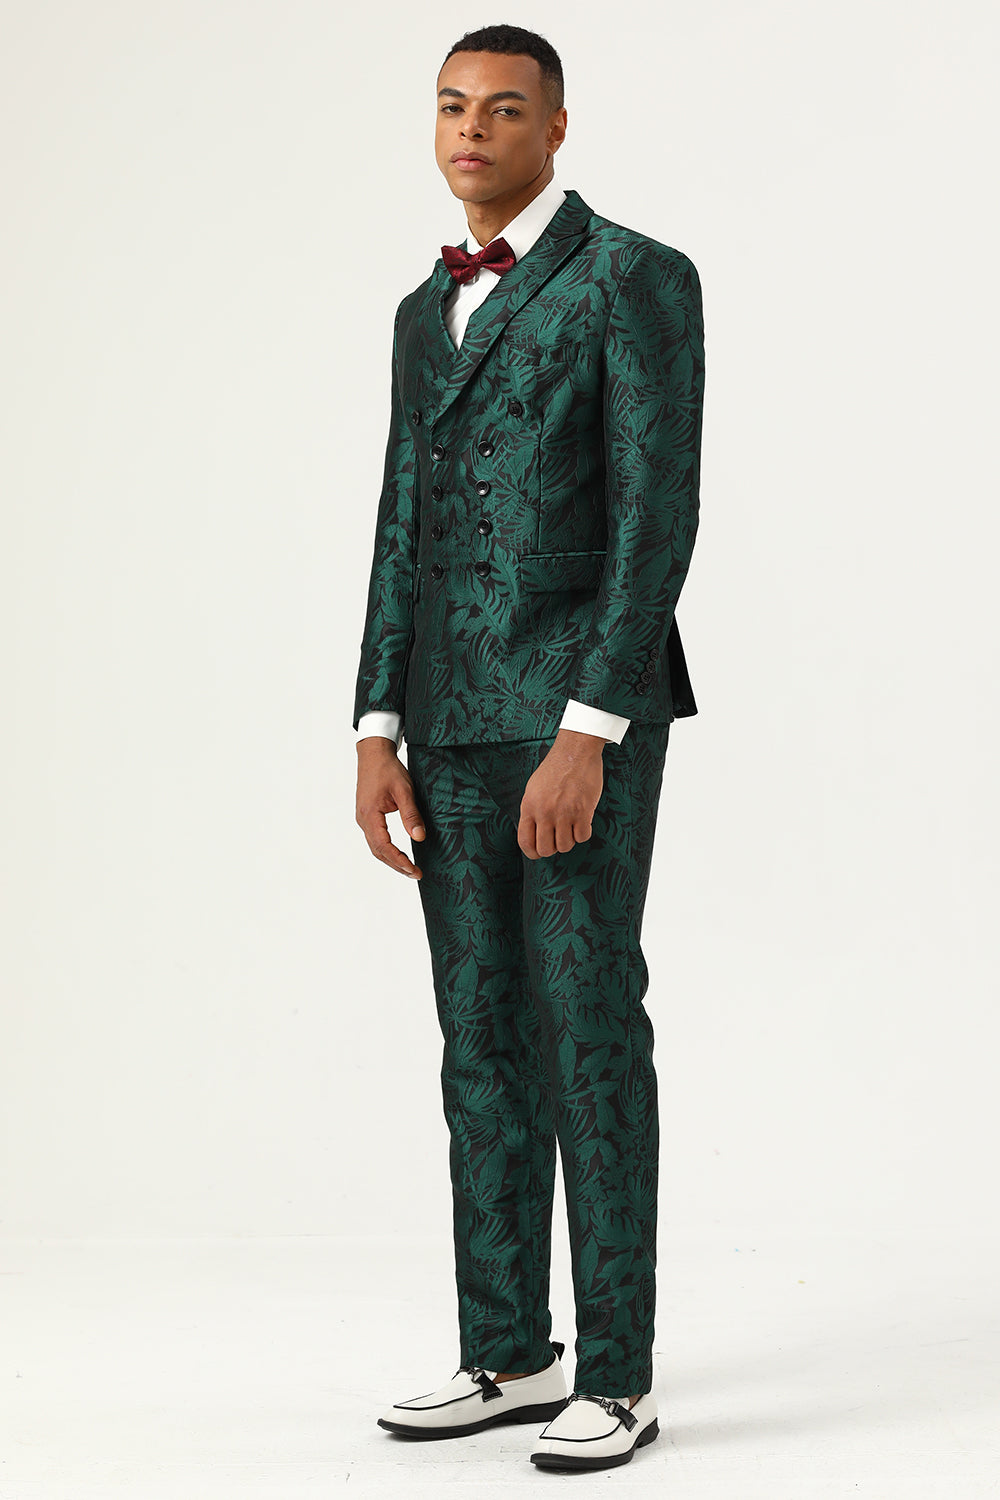 Lvnes Men's 2-Piece Jacquard Prom Suits